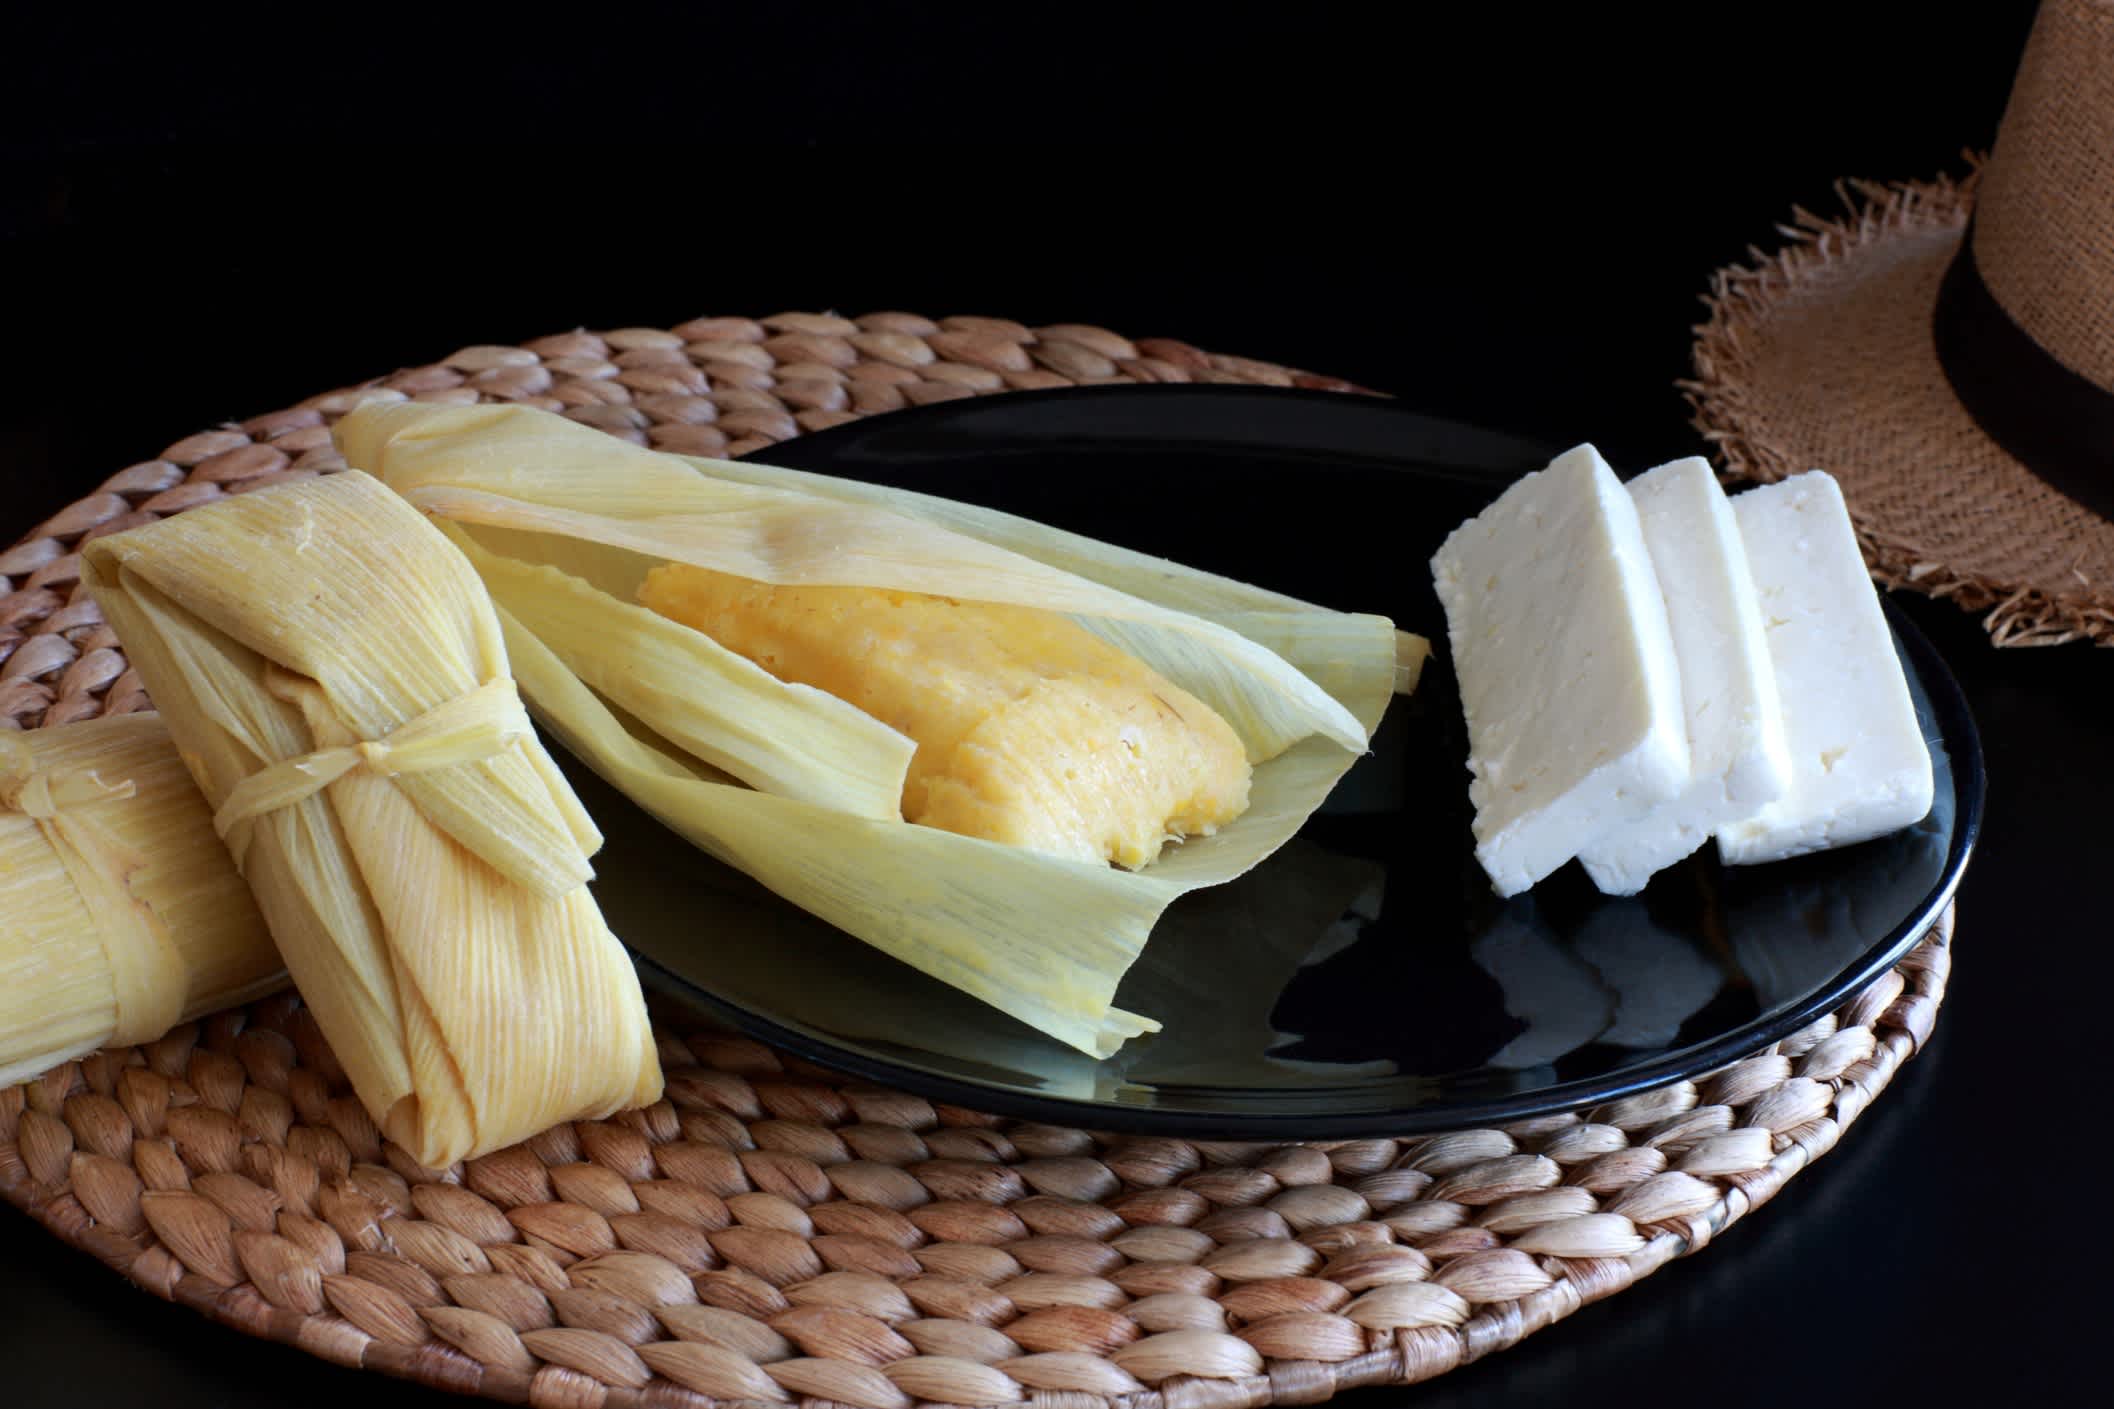 Humita - plats traditionnels d'Amérique latine. Maïs et feuilles servis avec du fromage